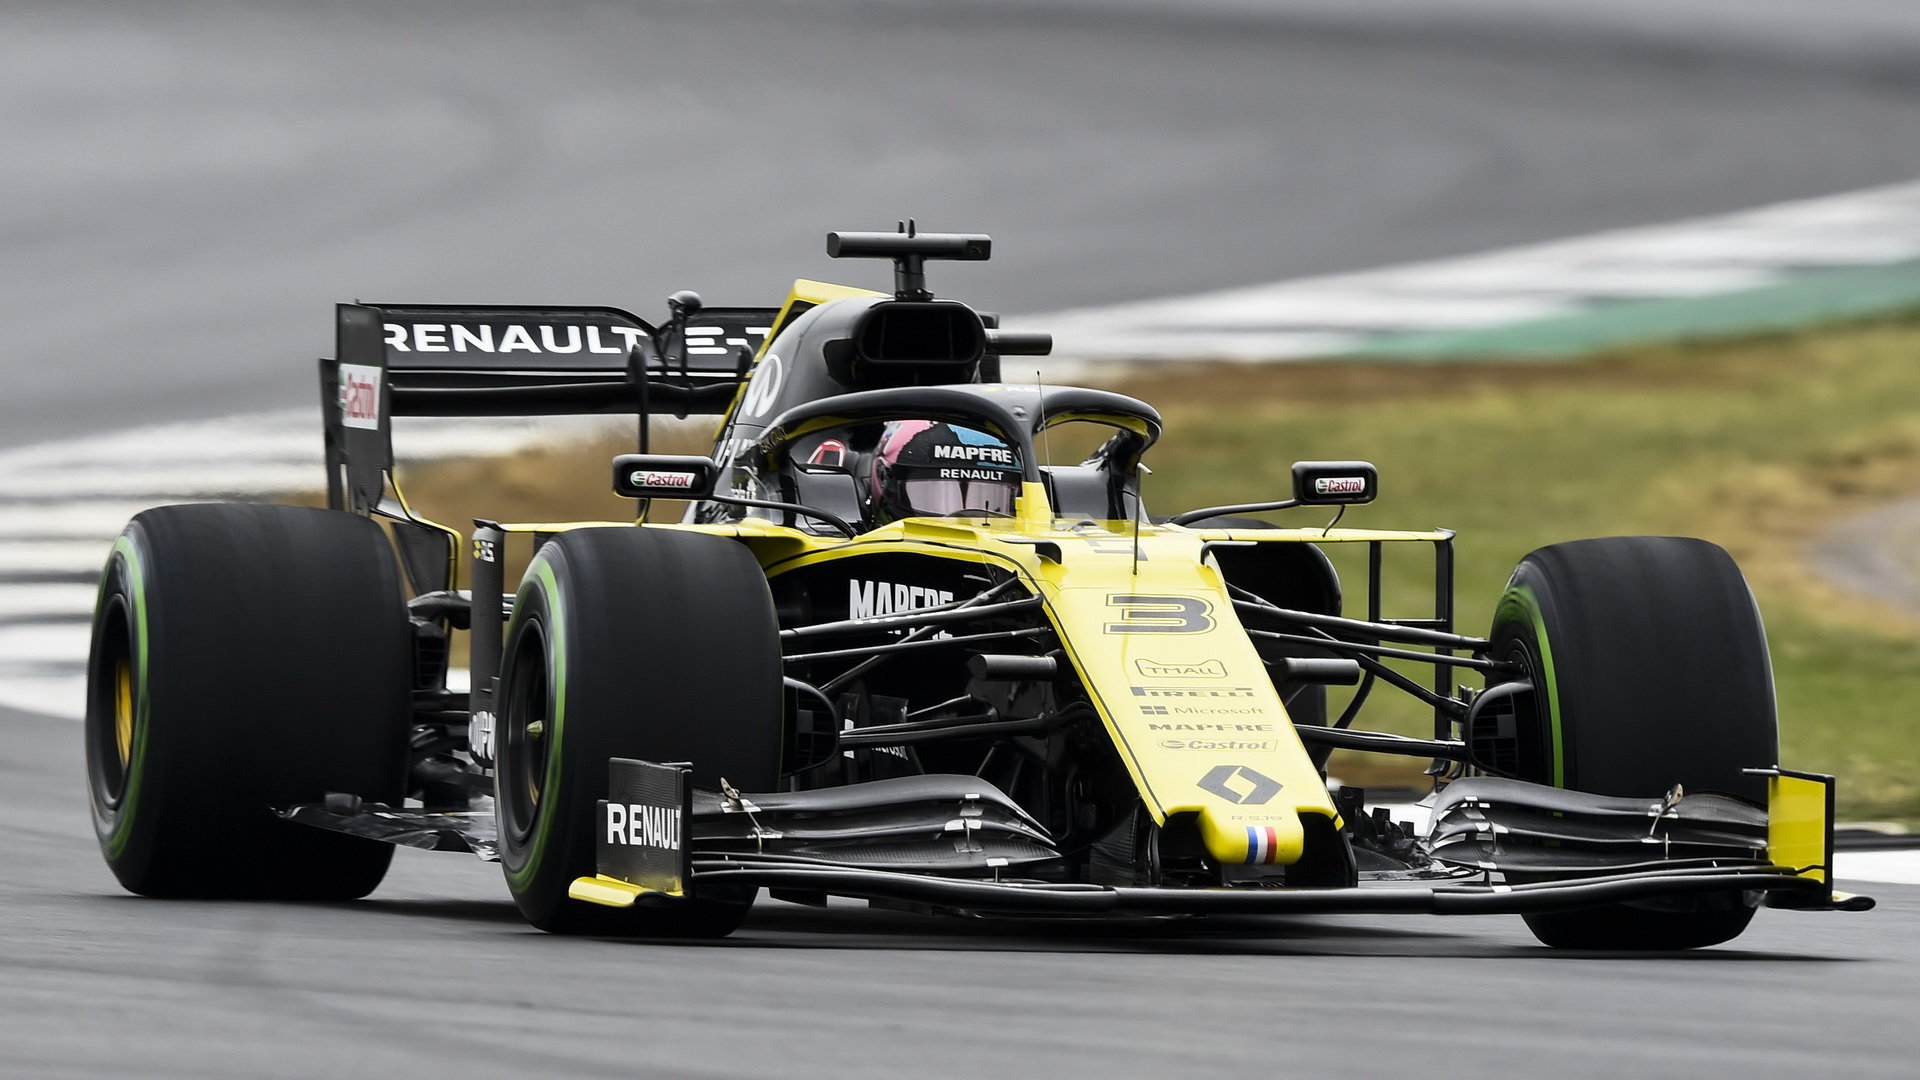 Letošní sezónu dokončí s Renaultem. Pomůže si pak dalším přestupem?